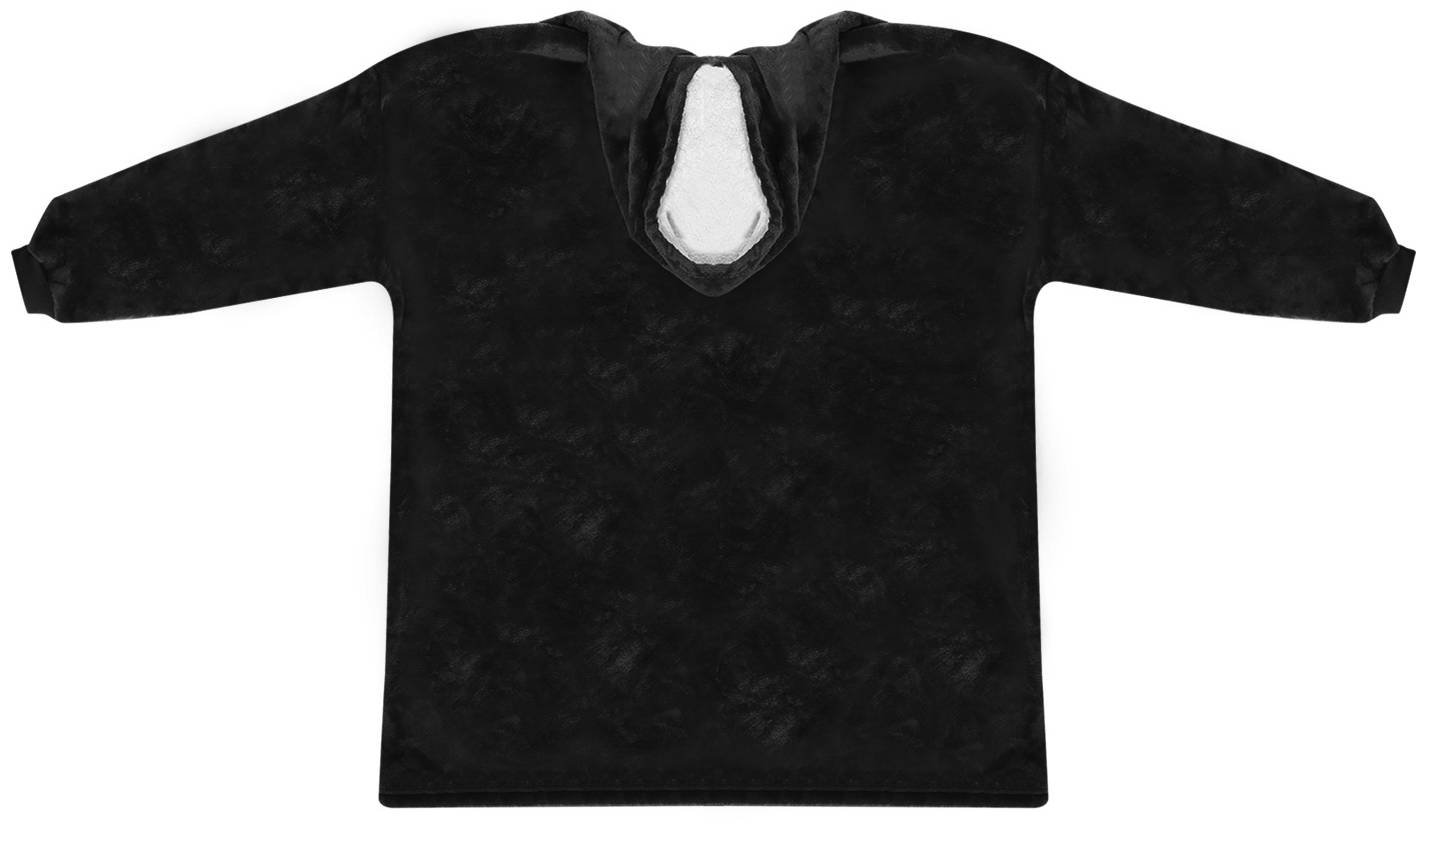 Meleg-kapucnis-pulover-1-nagy-zsebbel-XXL-meret-fekete-BB-9388-14